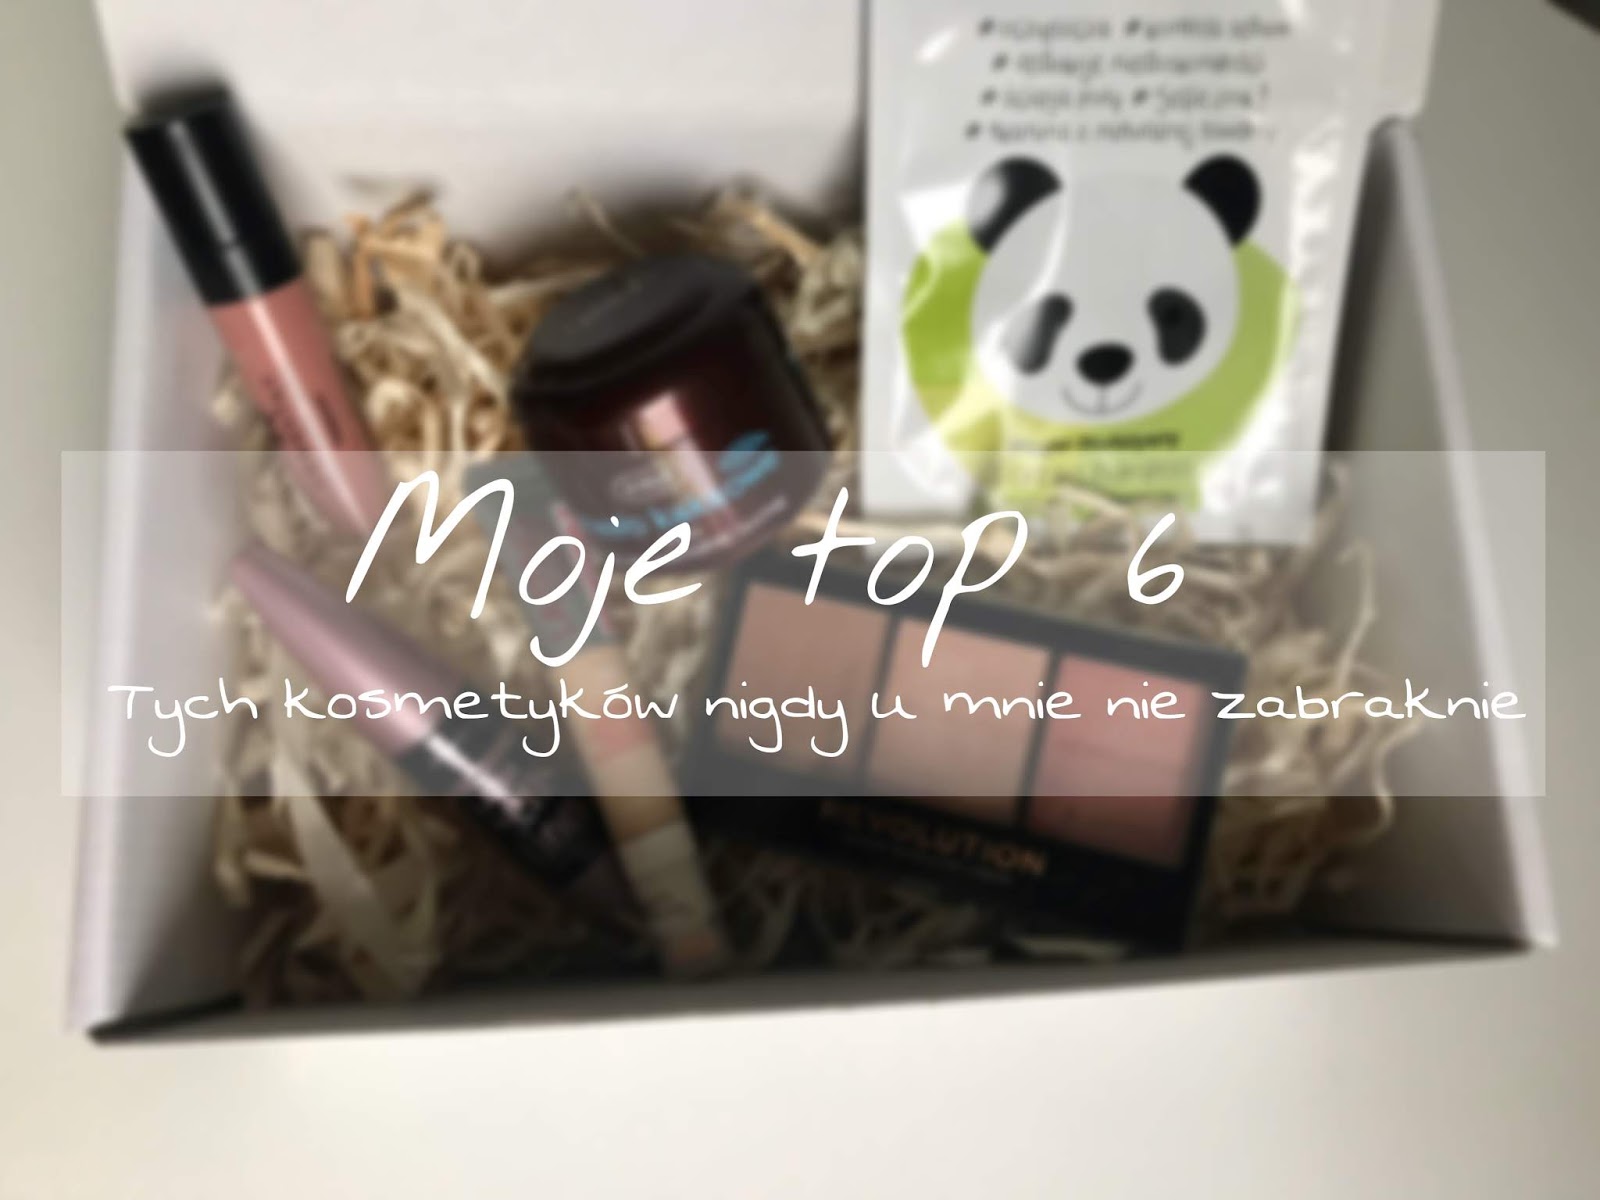 Vèrson blog : Moje top 6 - Tych kosmetyków nigdy u mnie nie zabraknie